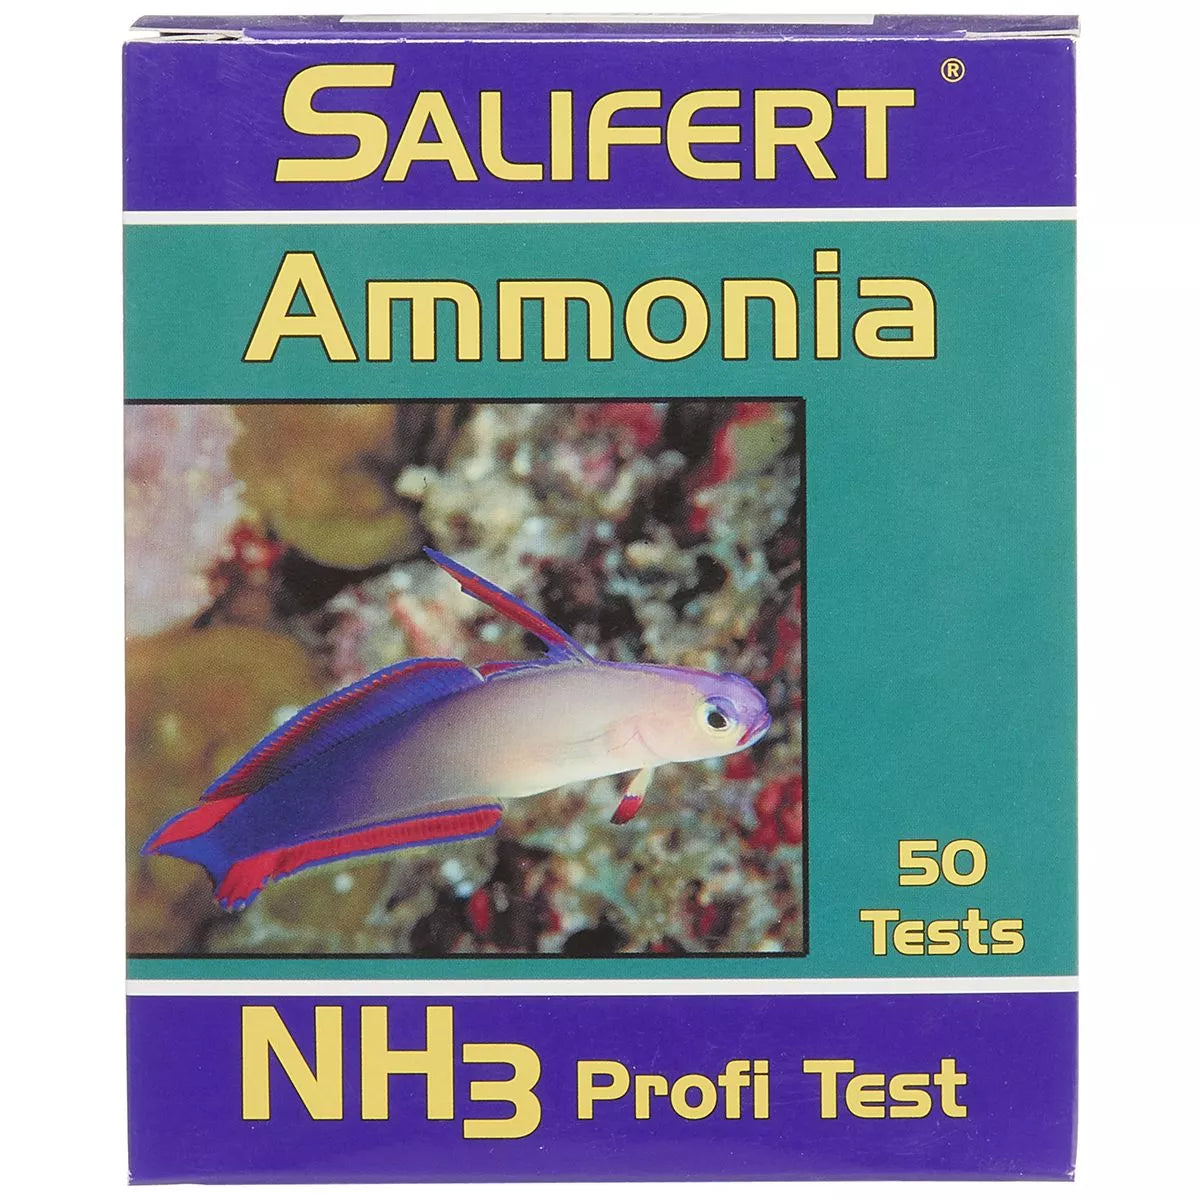 Ammonia Test Kit